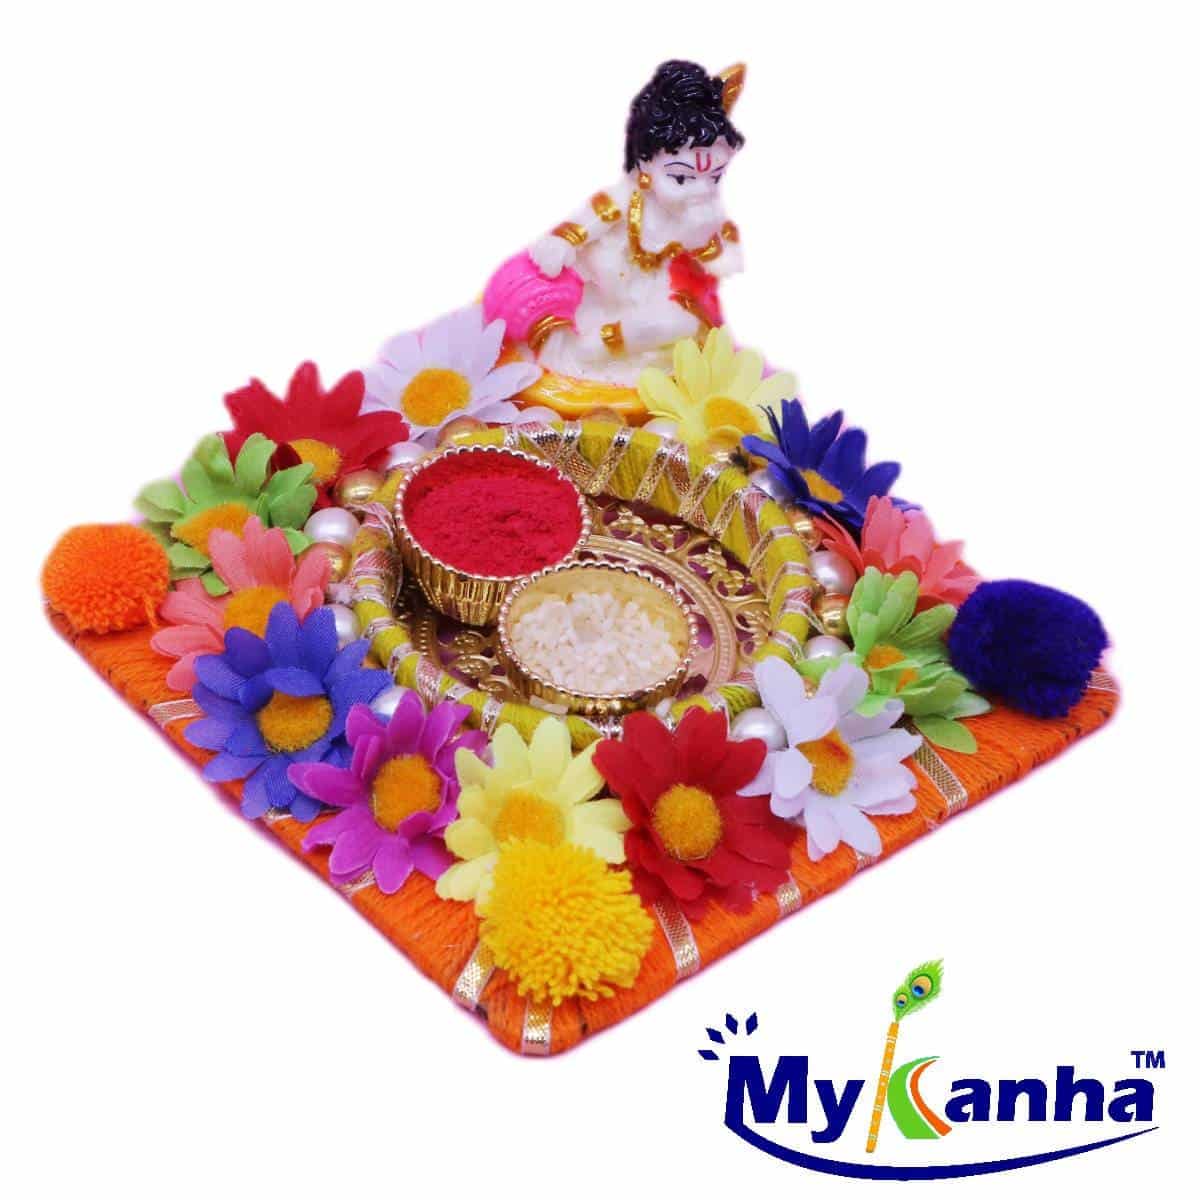 Little Kanha, Flower , pom pom decorated Roli Chawal Pooja Thali